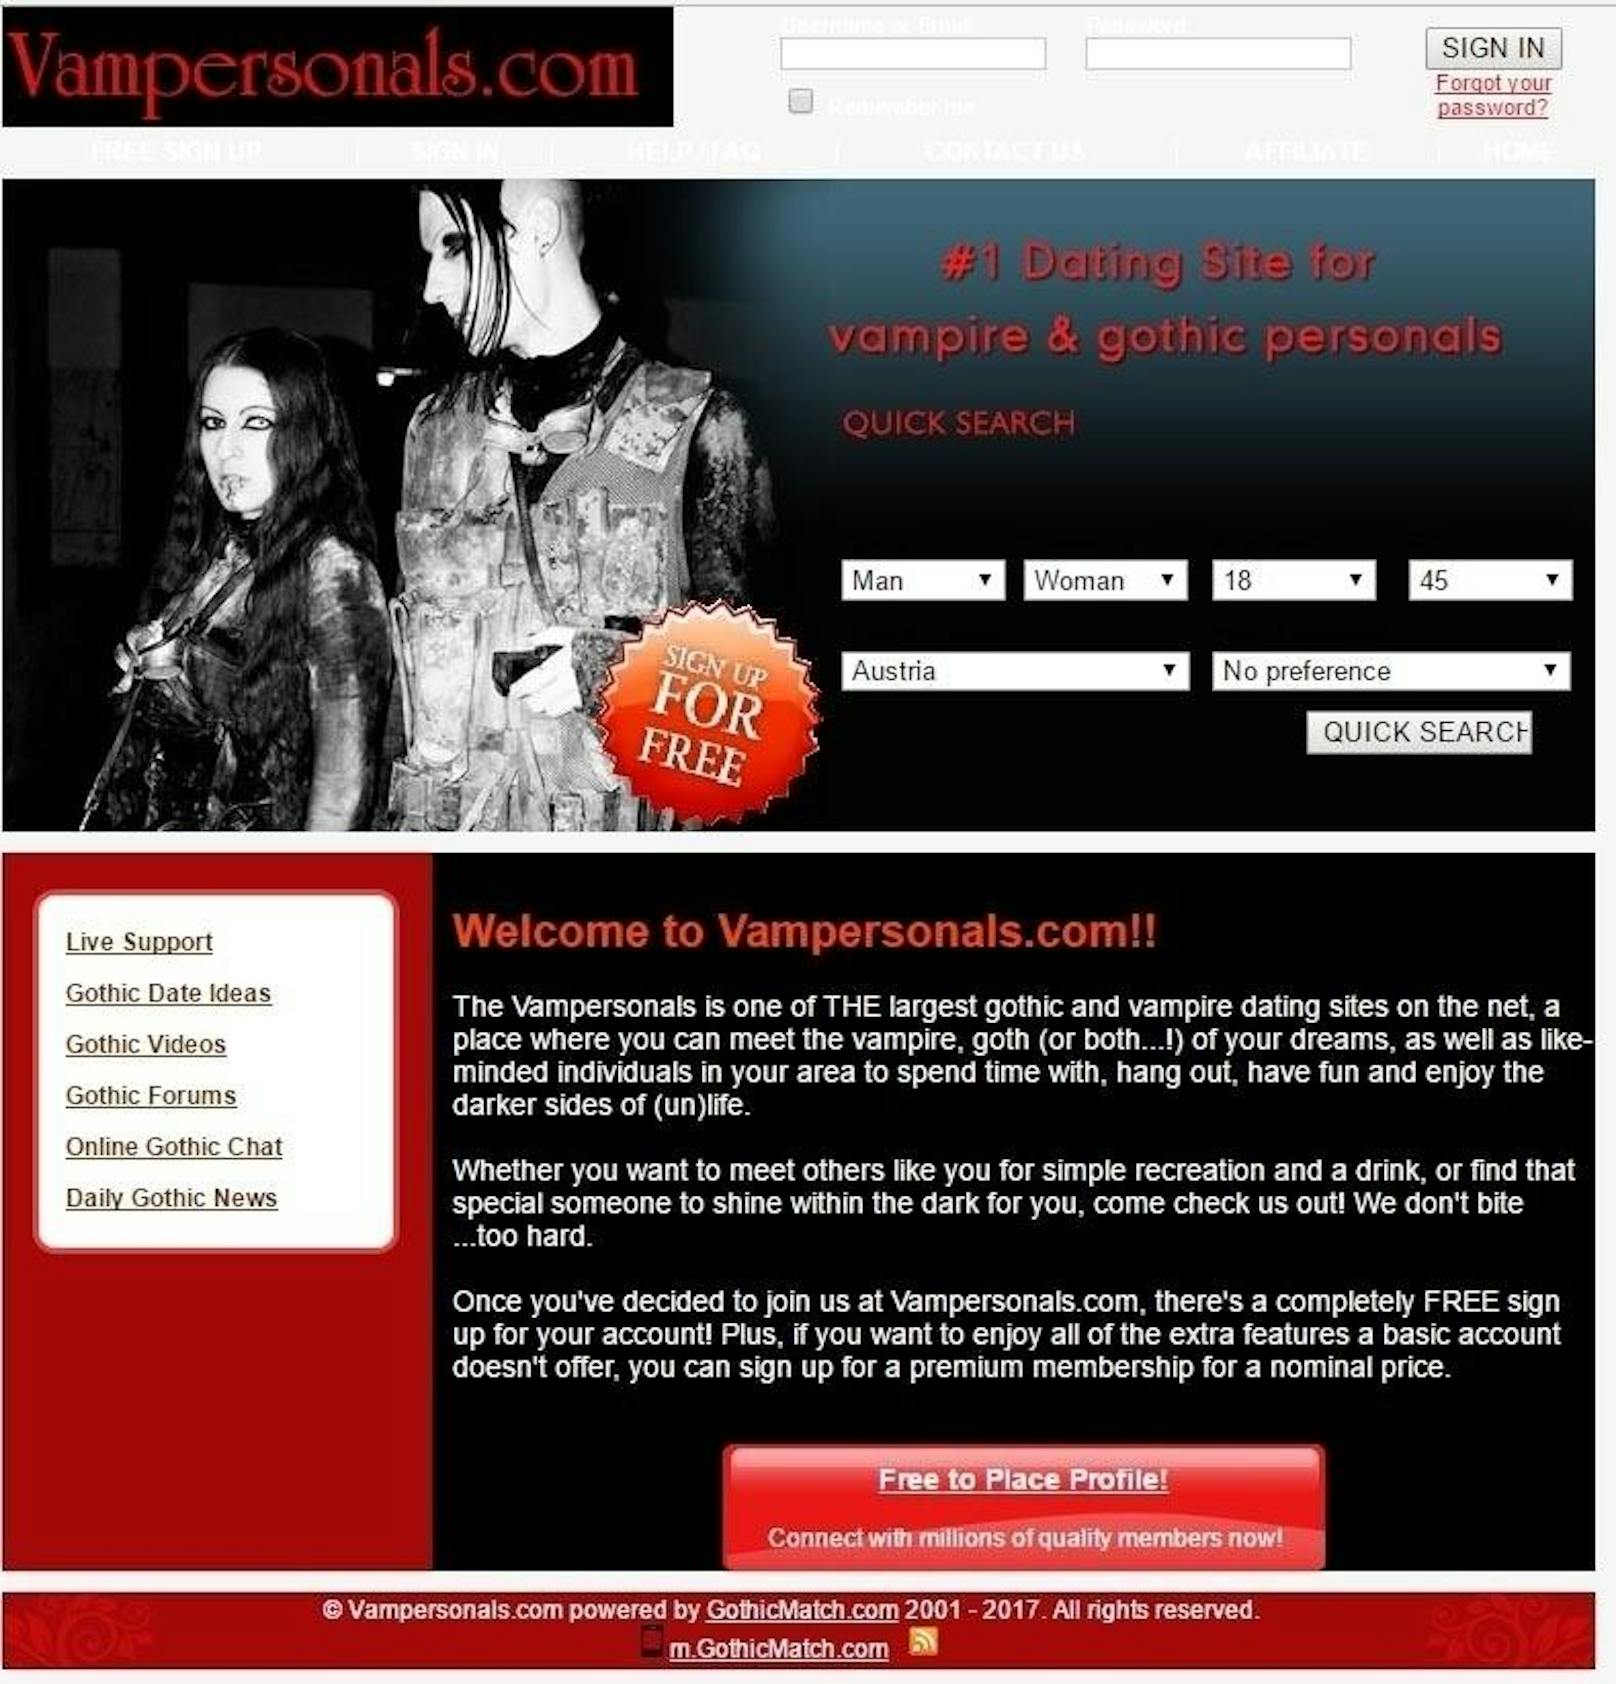 Eine der größten Online Dating-Plattformen für Gothics und Vampire! Für Menschen, die die schwarze, dunkle Seite des Lebens lieben. <a href="vampersonals.com" target="_blank">http://www.vampersonals.com/</a>